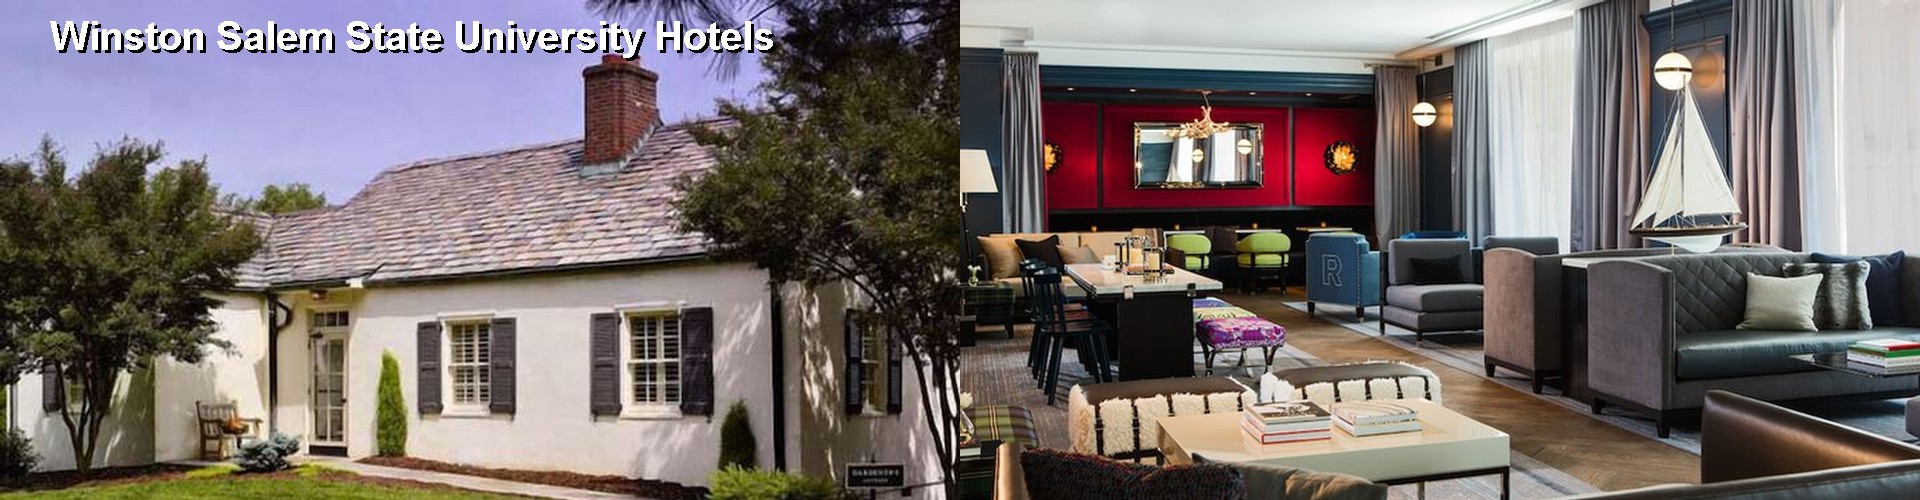 5 Best Hotels near Winston Salem State University